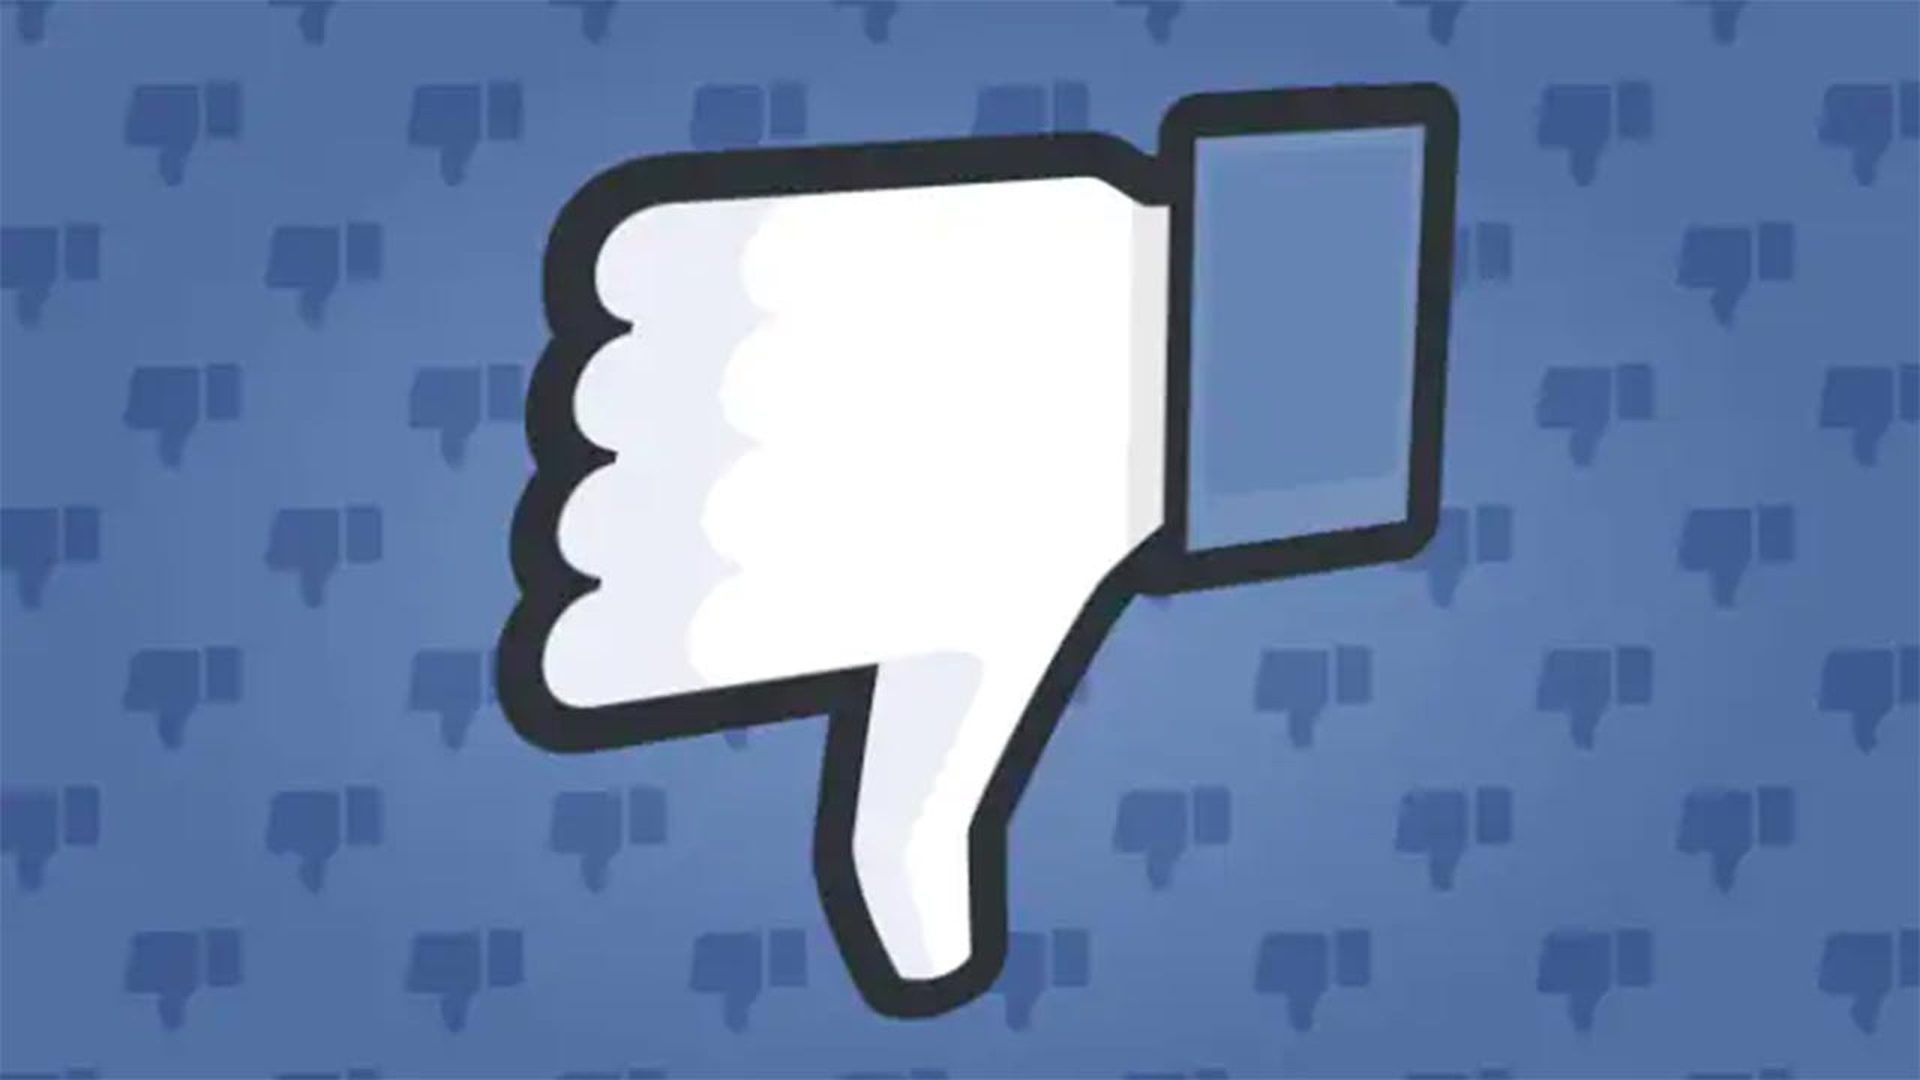 Comentários do Facebook não exibidos: como corrigir?